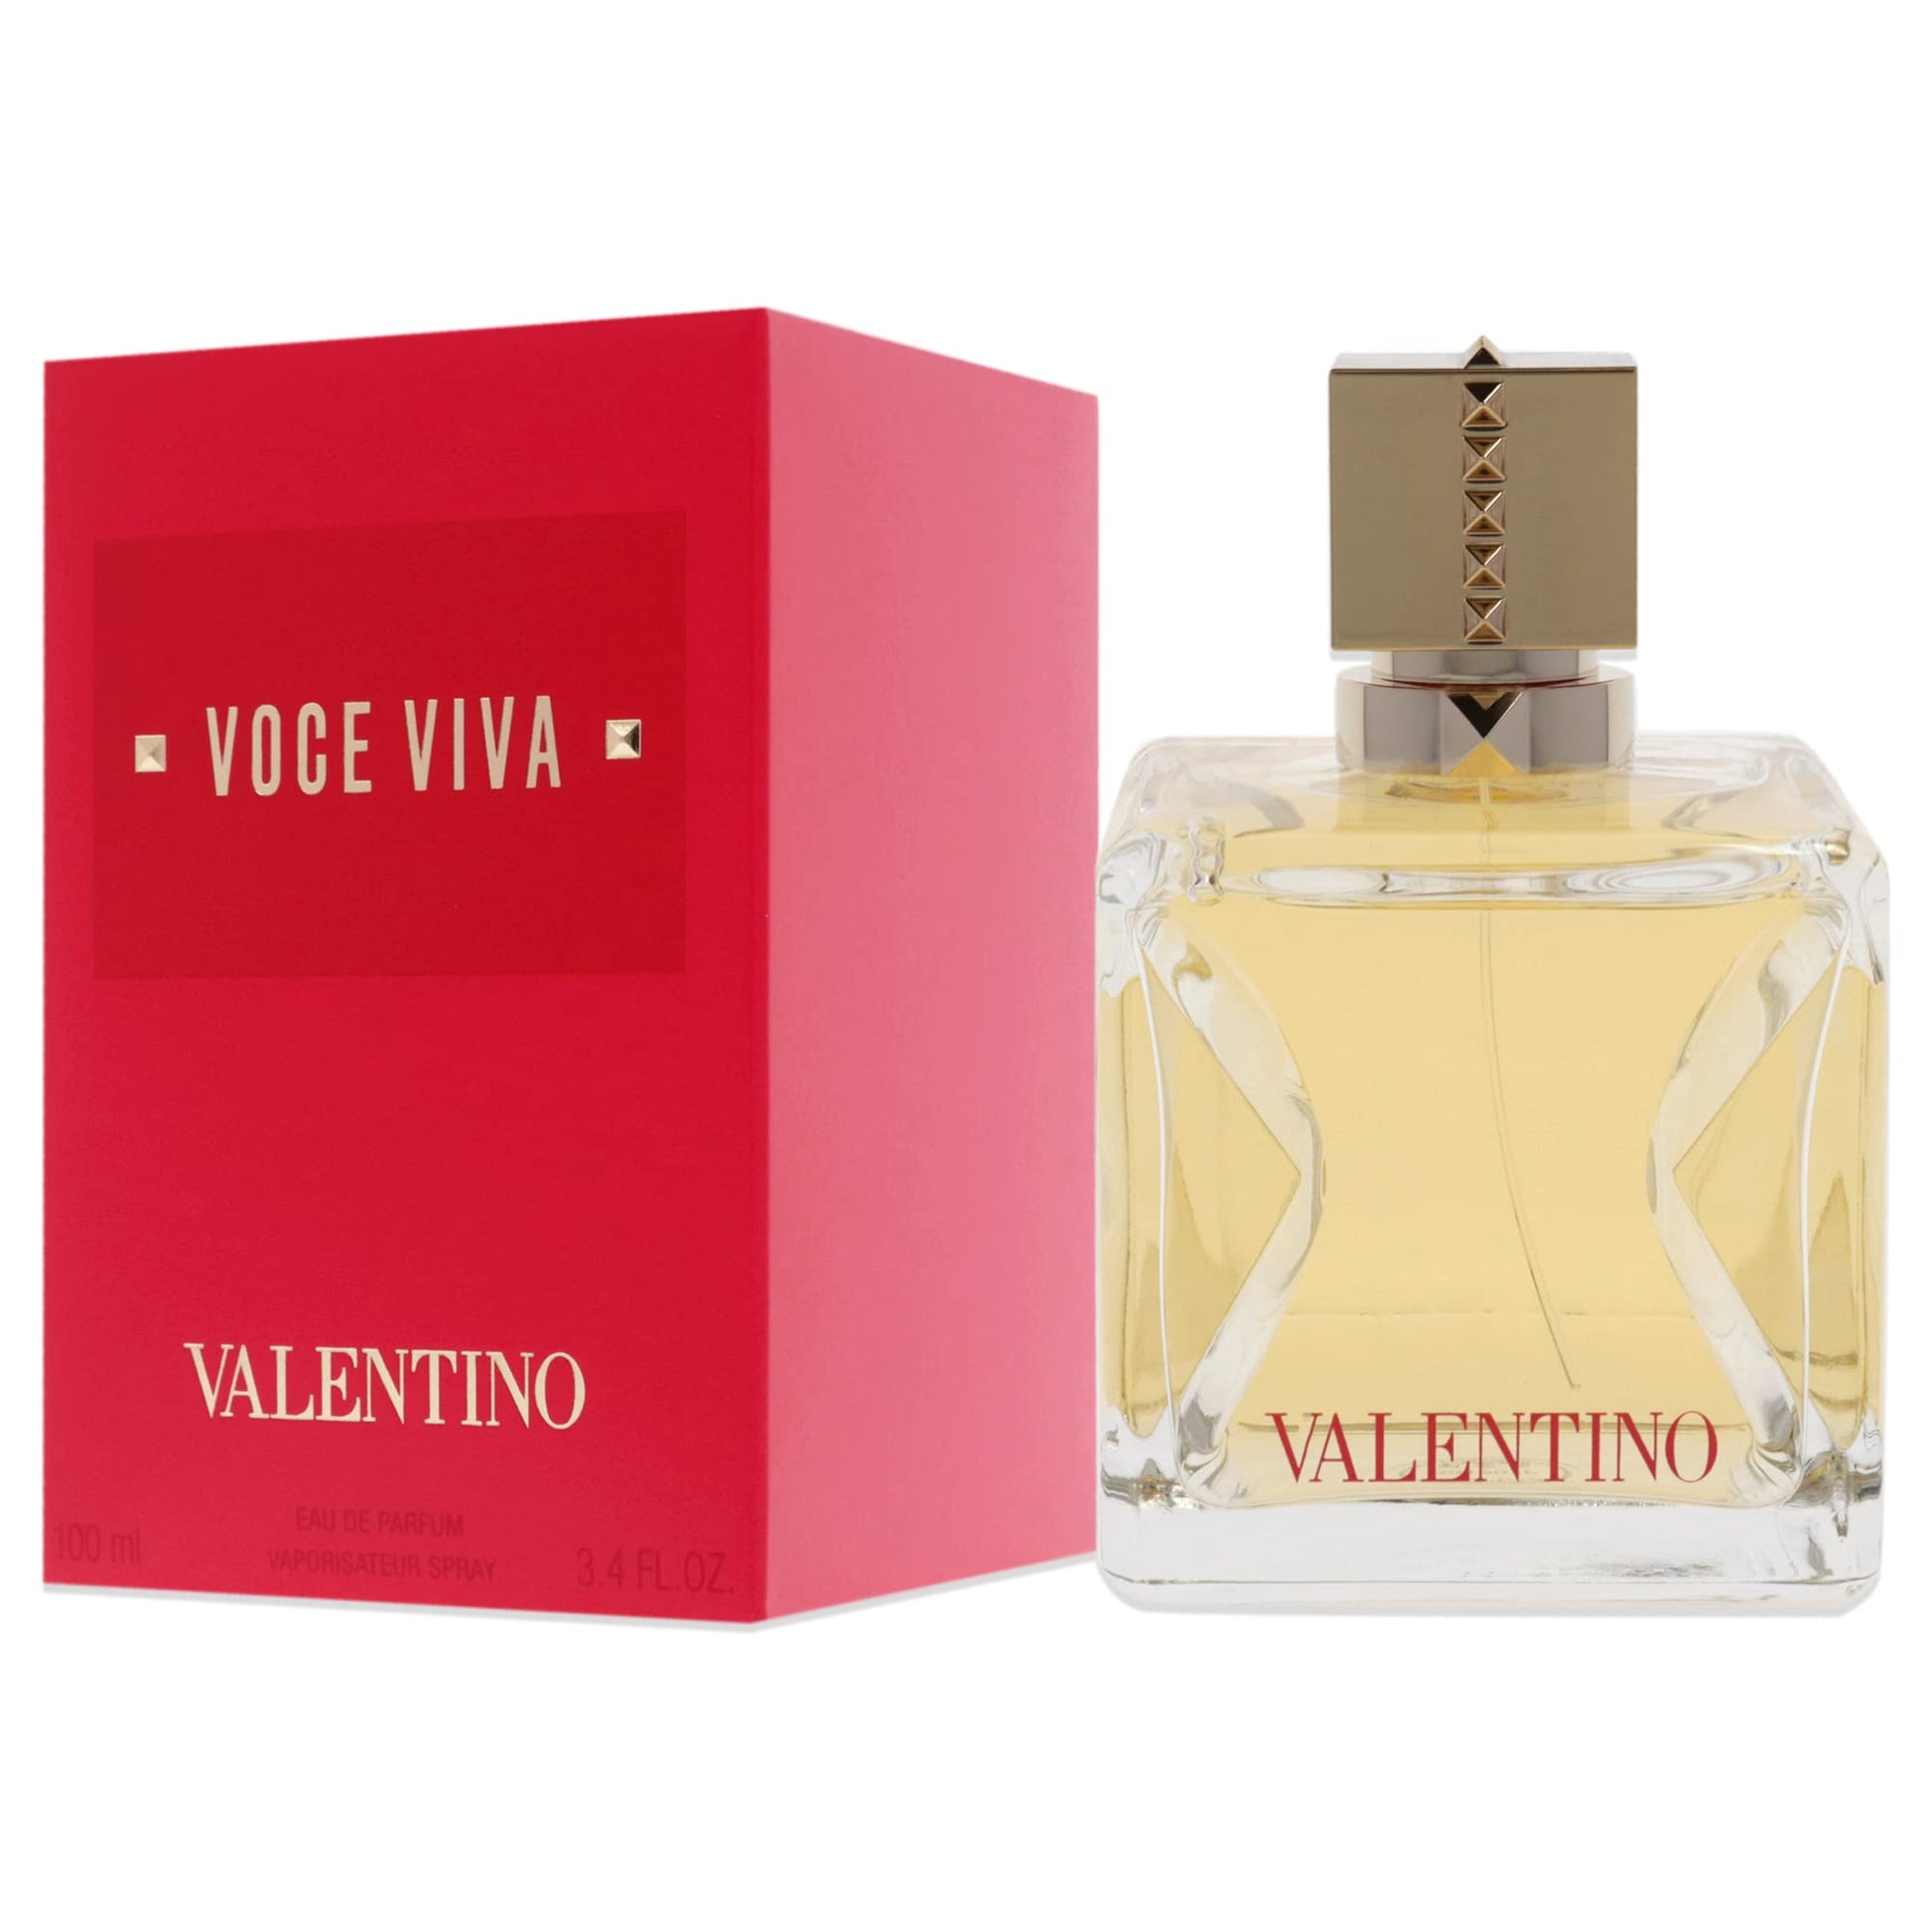 Valentino Voce Viva fragrance for women